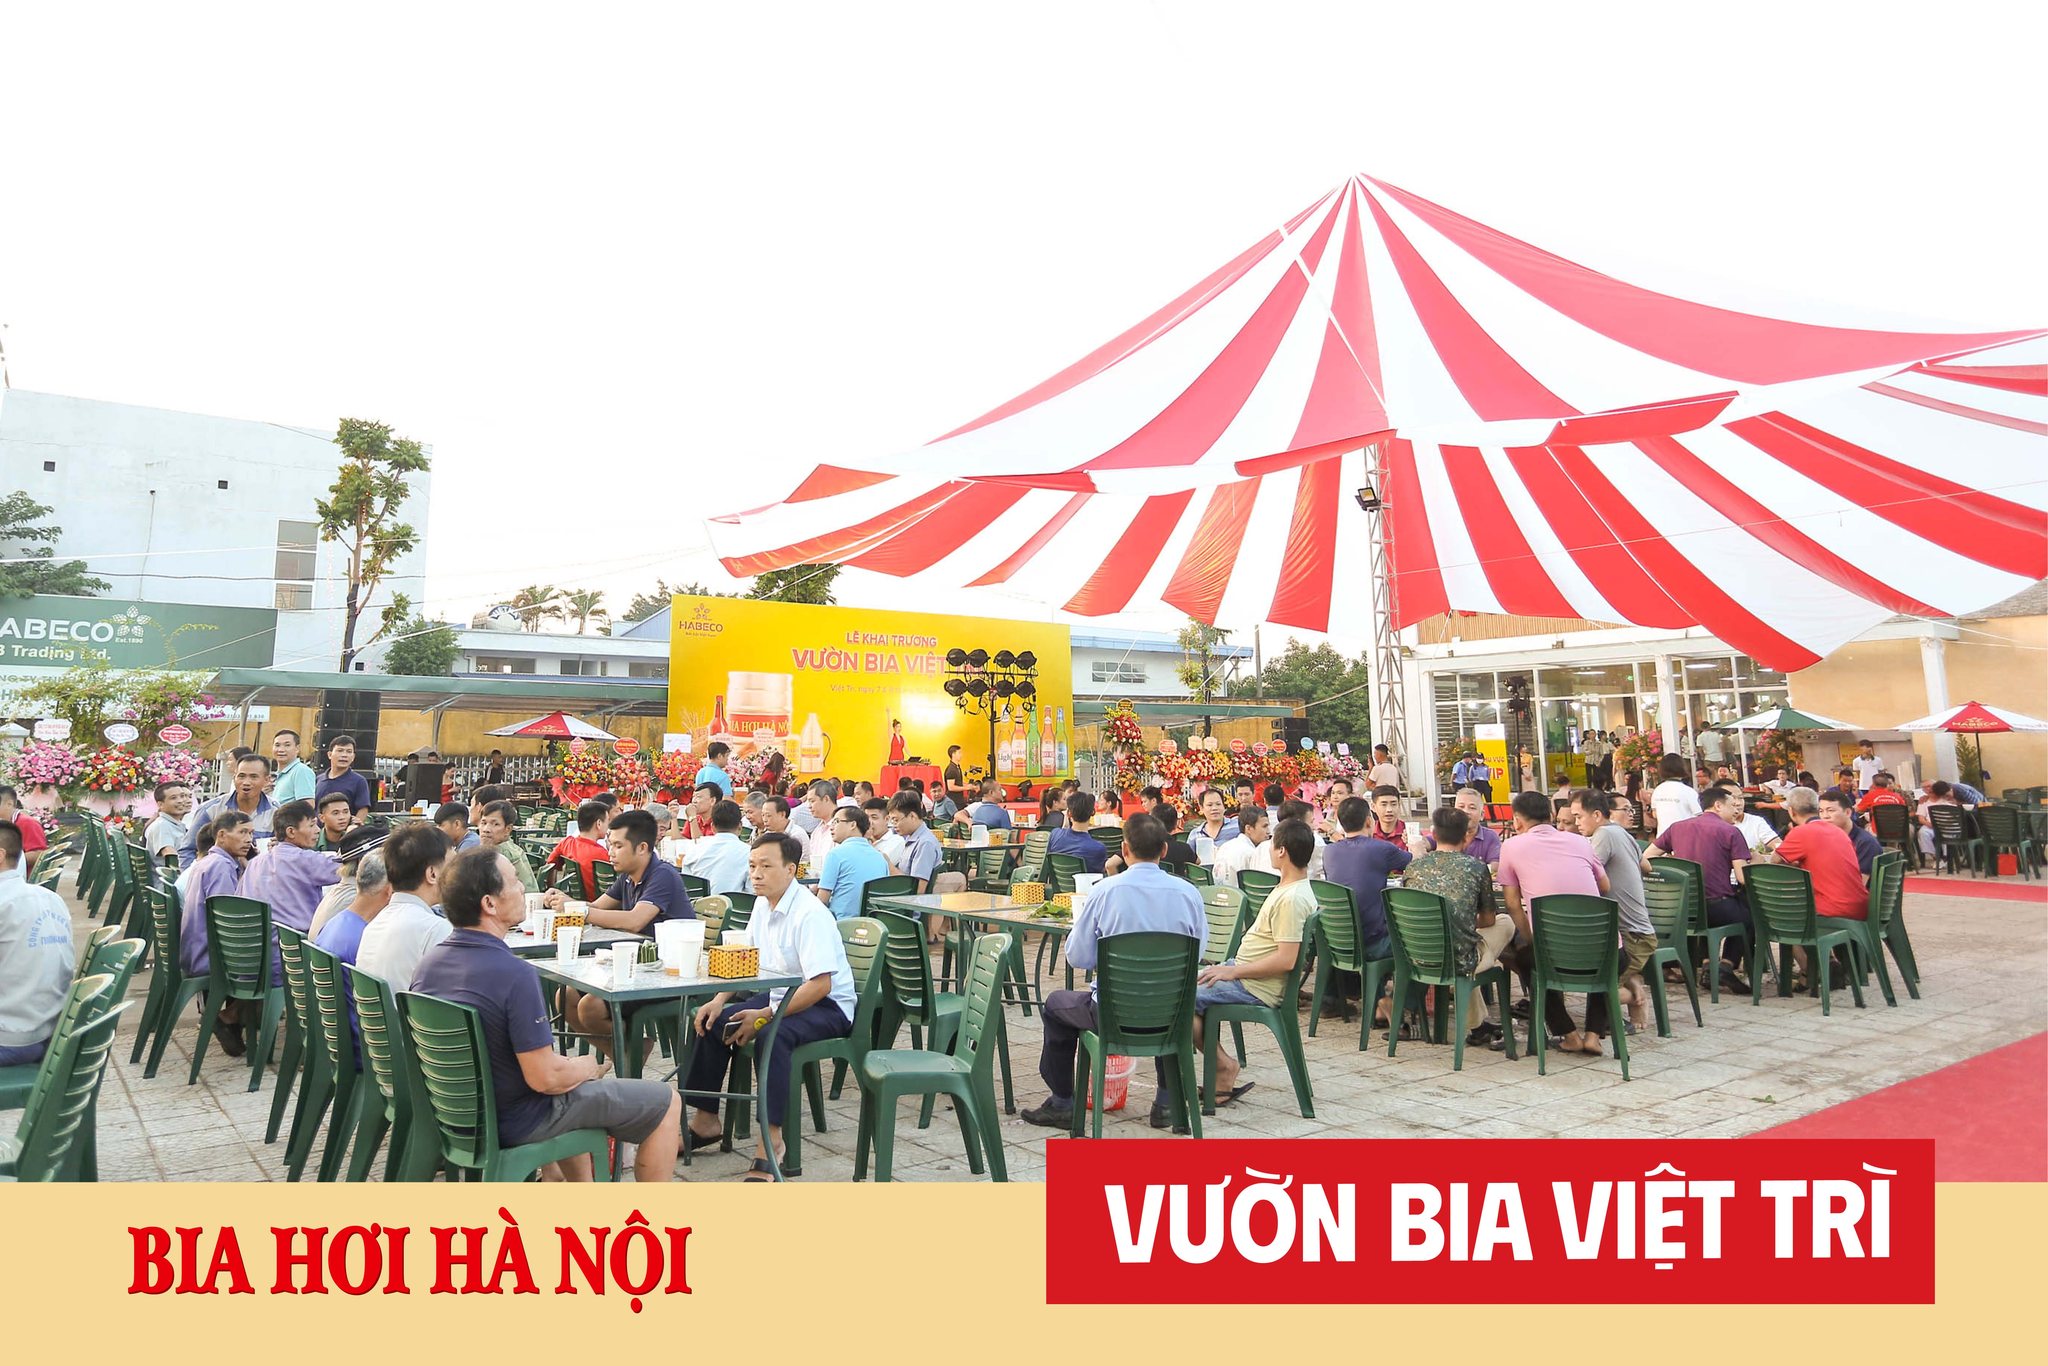 Hoà mình vào không khí tưng bừng của chương trình tri ân khách hàng Vườn Bia Việt Trì